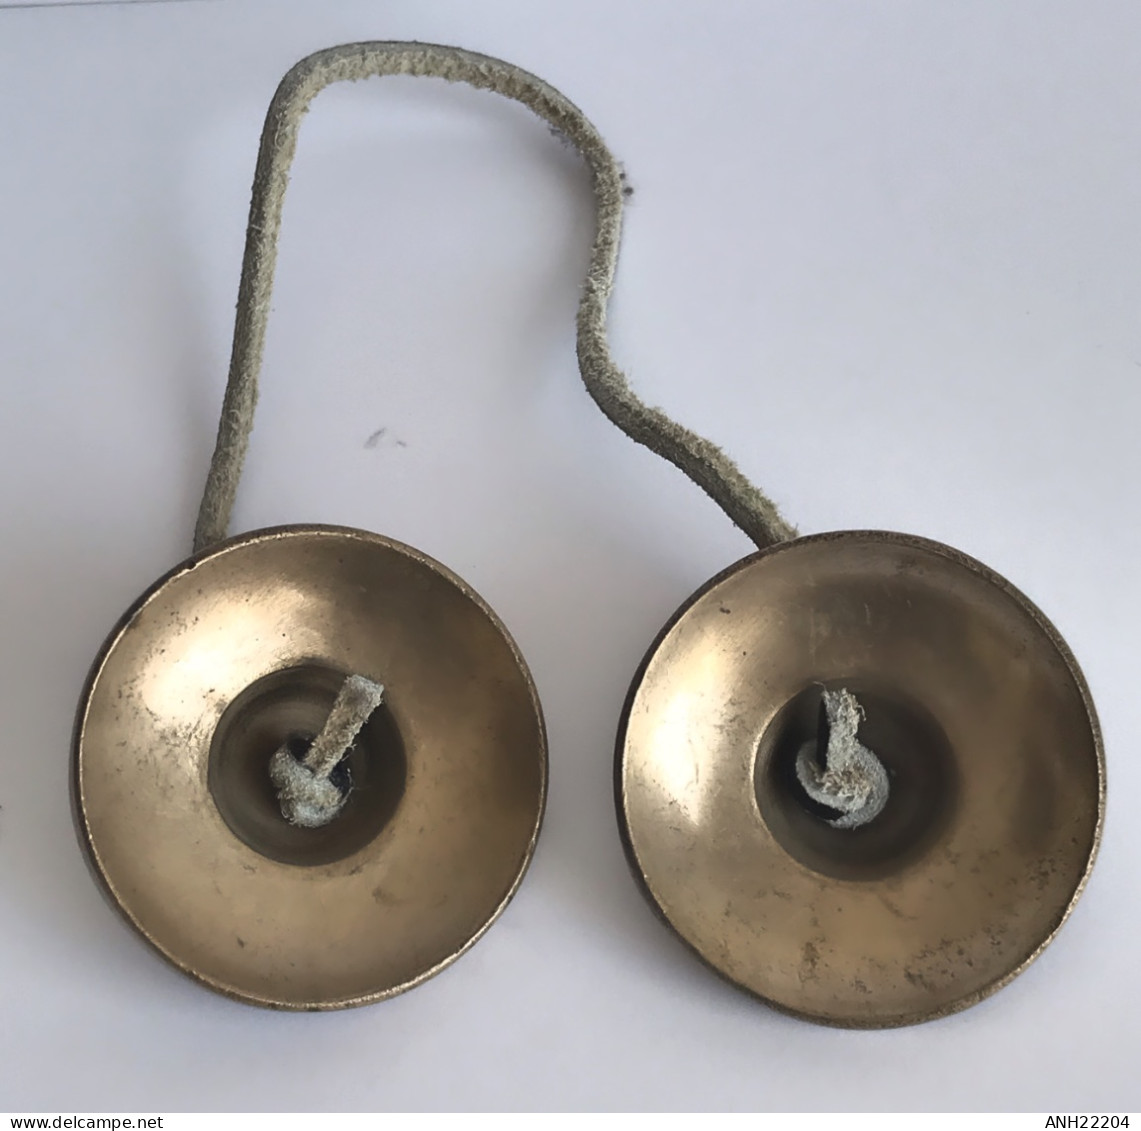 Cymbales/cloches tingsha (2), Tibet, 1ère moitié 20ème siècle. Objets de sanctuaire